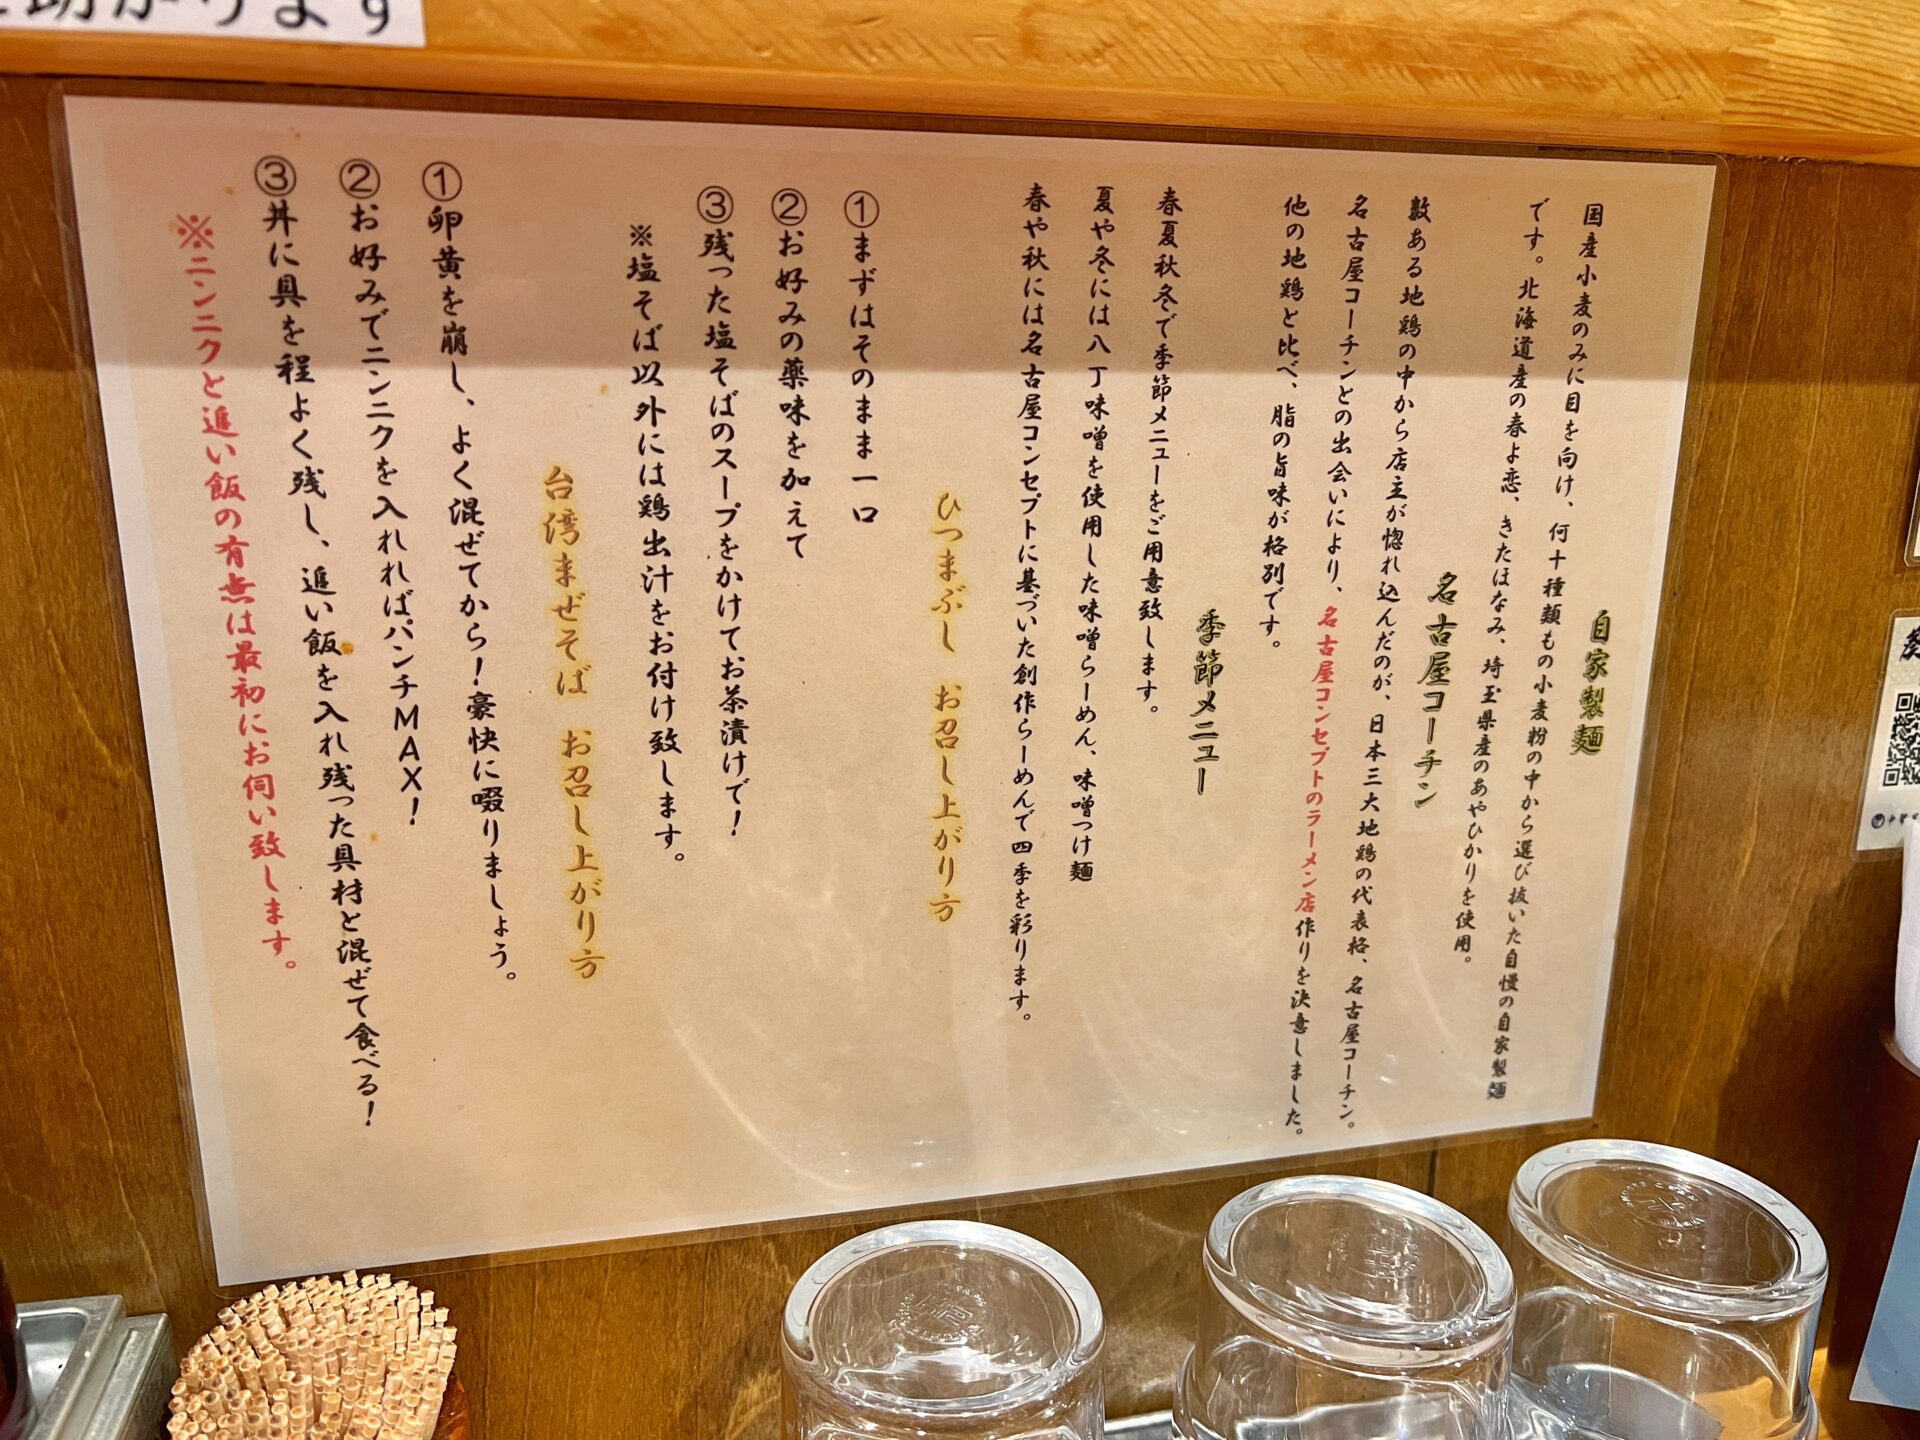 川口市「自家製麺 竜葵」絶品ラーメンにひつまぶし!?驚きの平日ランチセットを食べてきた